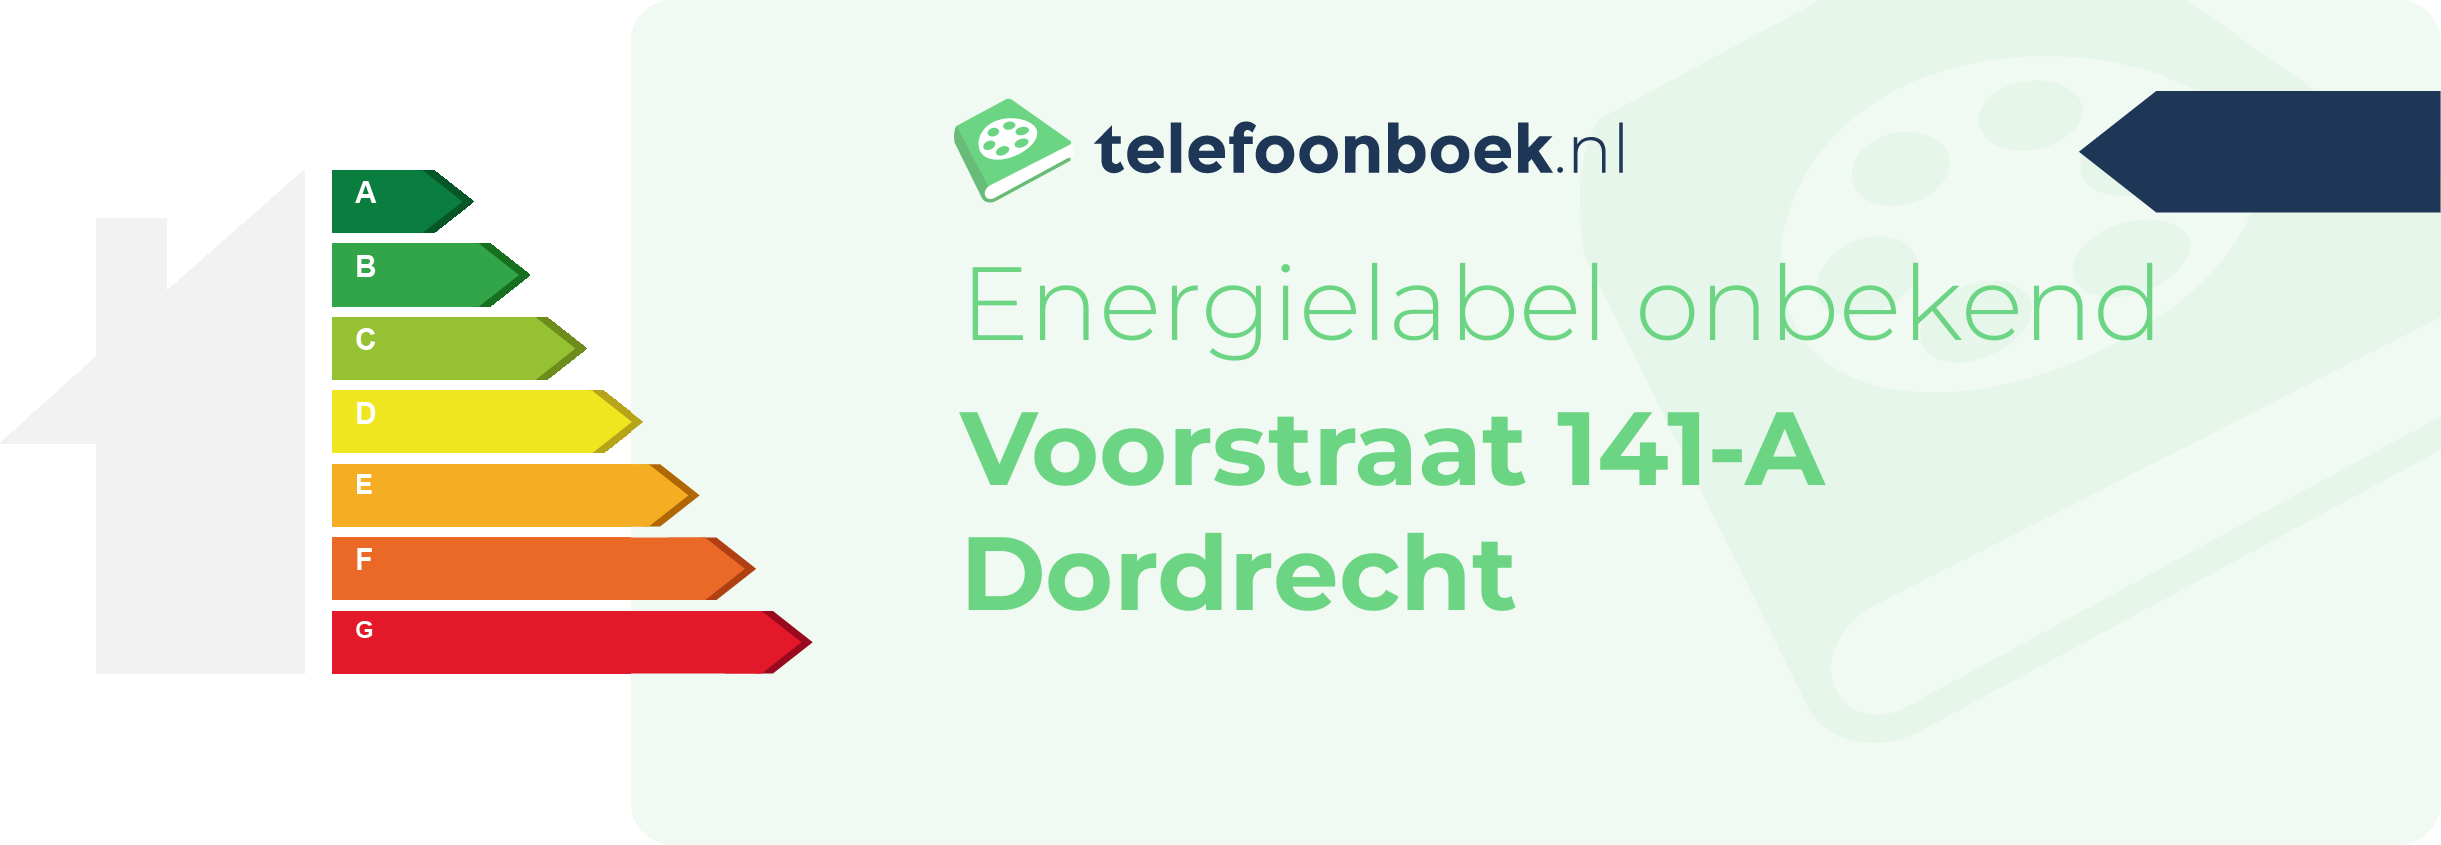 Energielabel Voorstraat 141-A Dordrecht